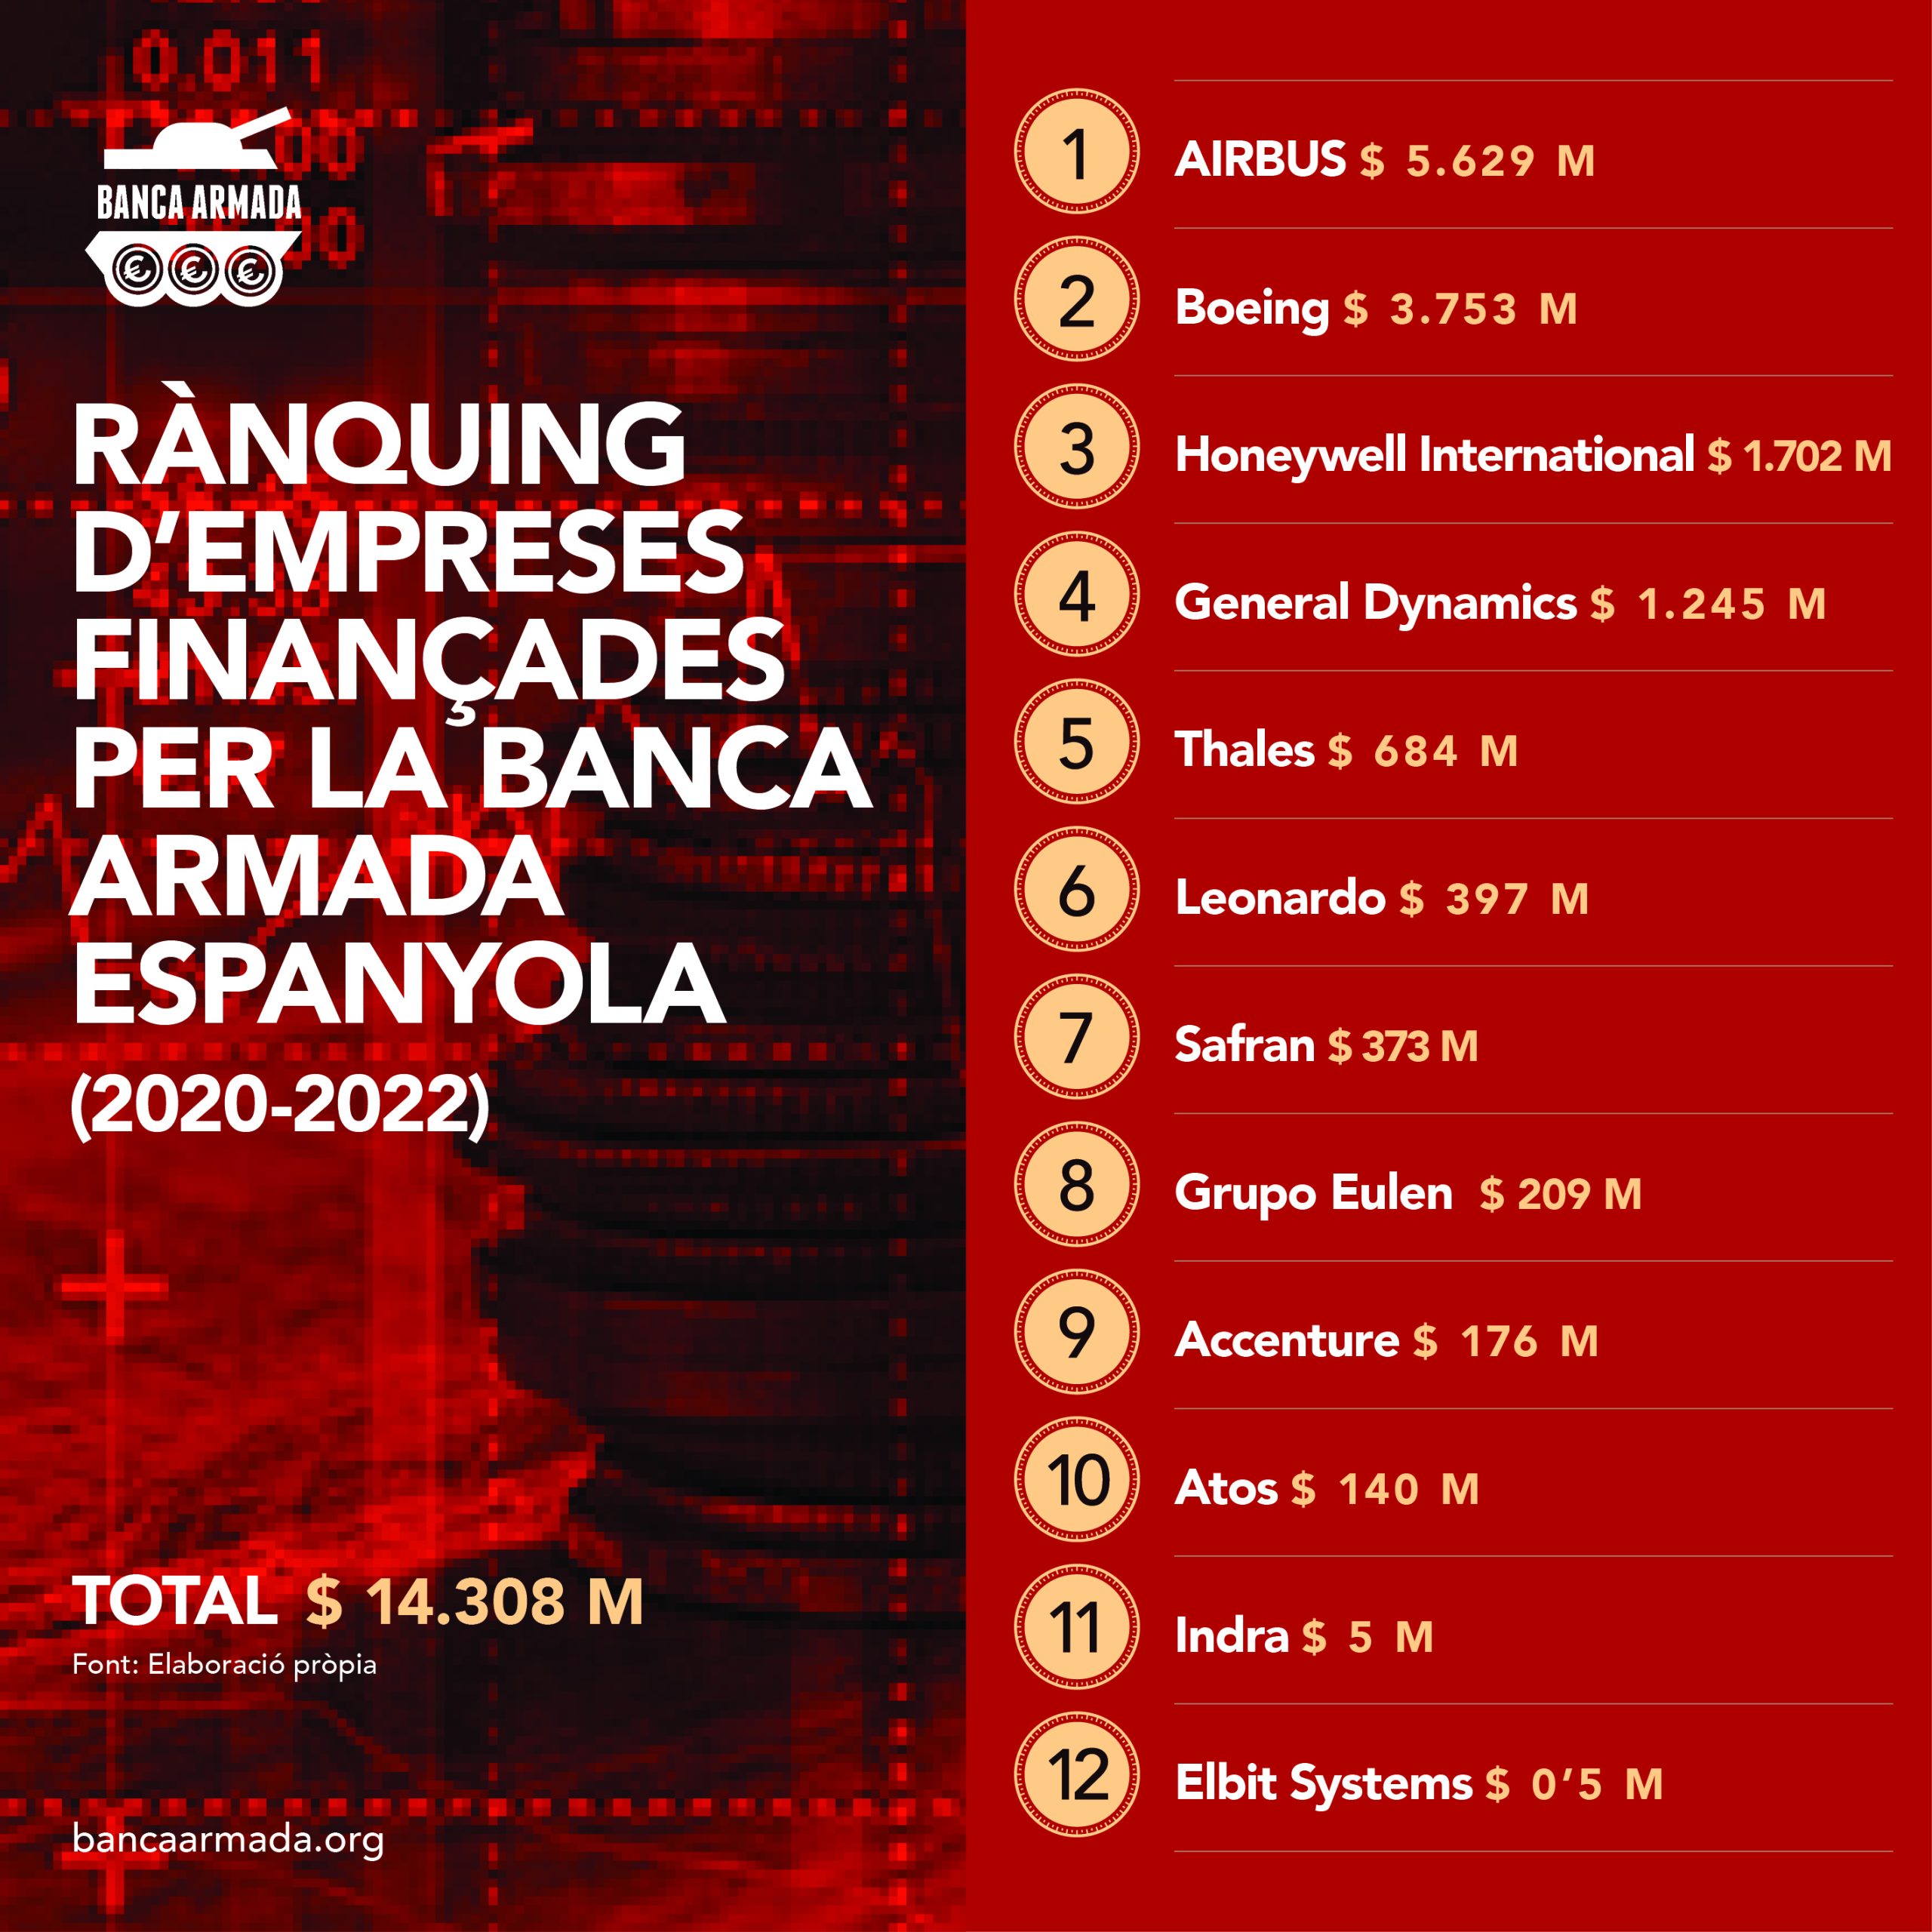 Infografia “Rànquing d’empreses finançades per la Banca Armada espanyola (2020-2022)”